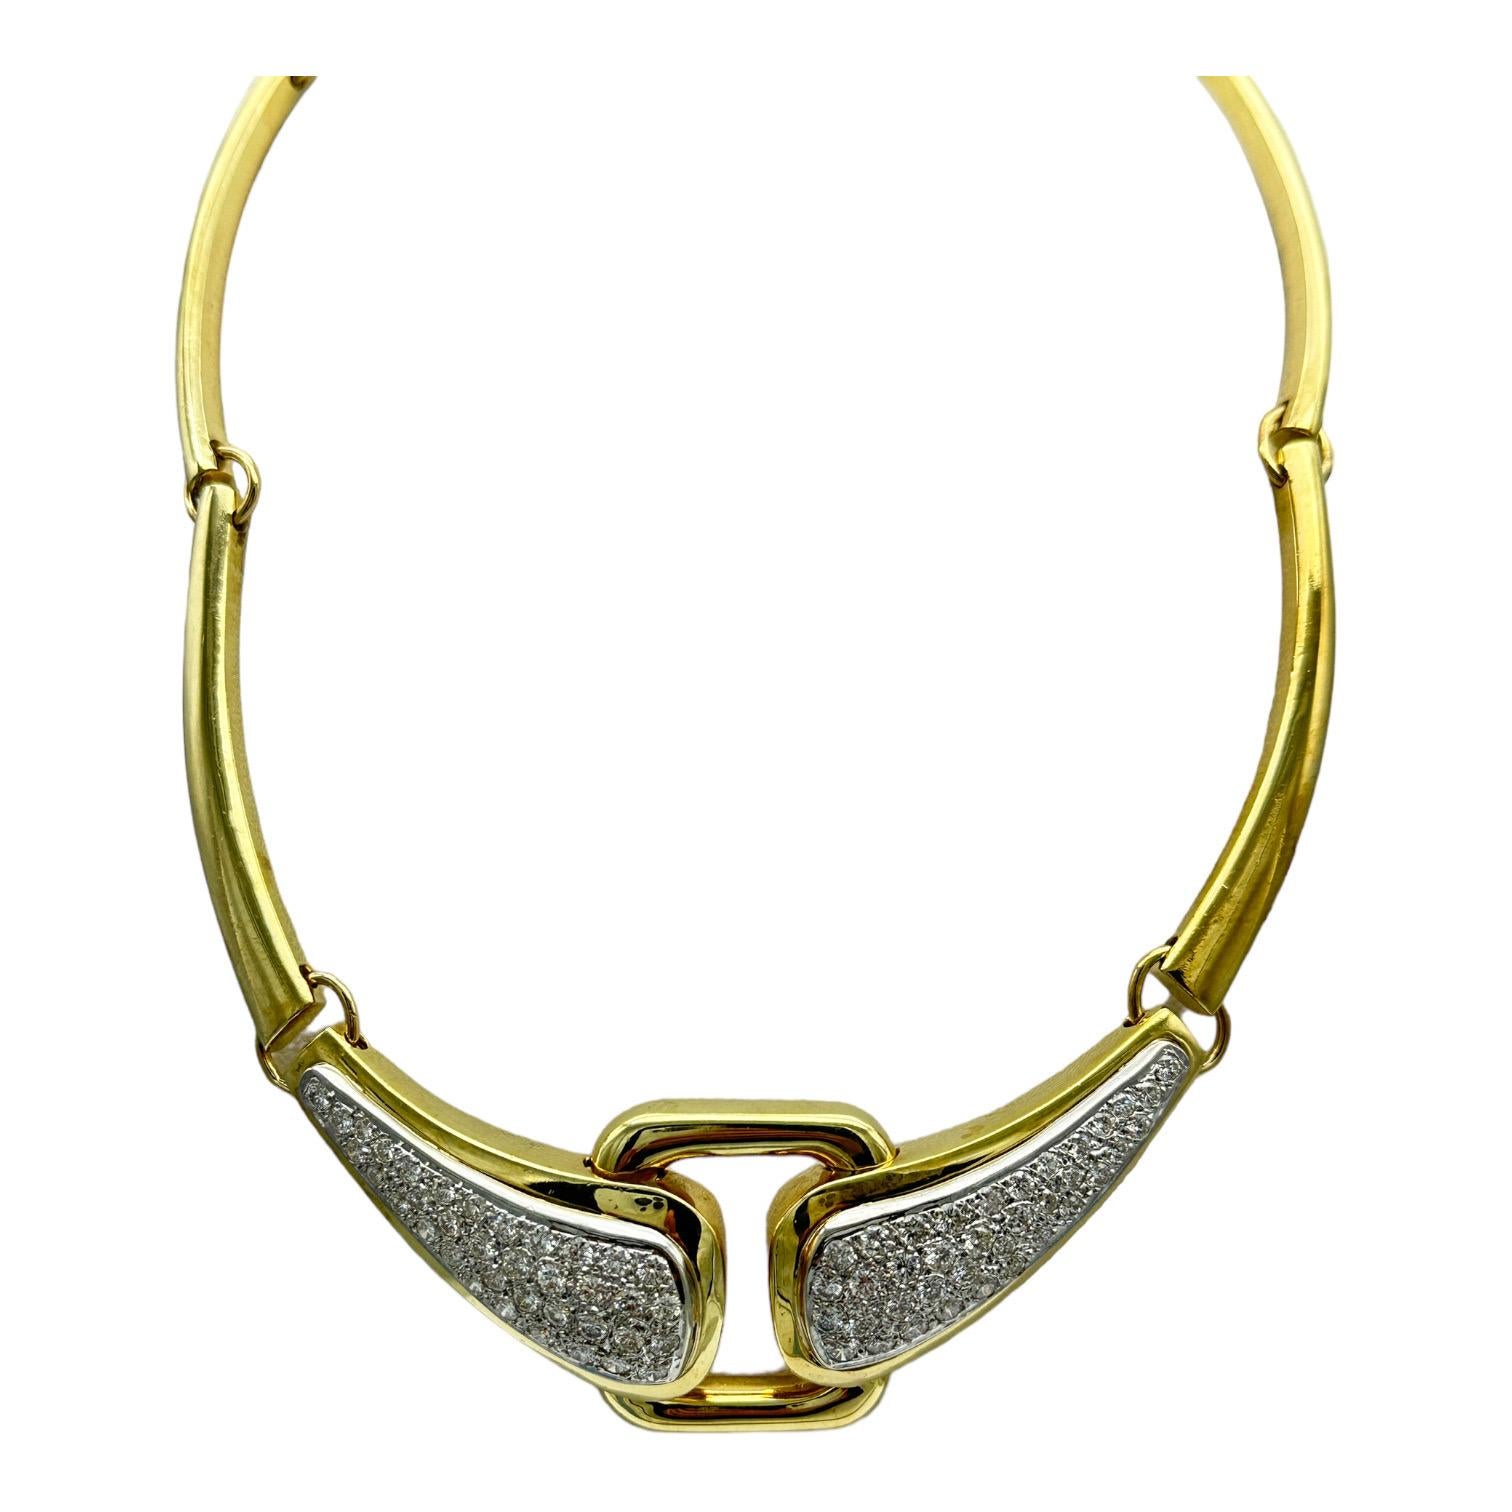 Diese atemberaubende Halskette ist aus 18 Karat Gelbgold gefertigt und mit einem 6,00-Karat-Diamanten besetzt. Die perfekte Mischung aus Luxus und Eleganz wertet jedes Ensemble auf. Die Länge beträgt 15,5 cm, ideal für eine Halskette im statuesken